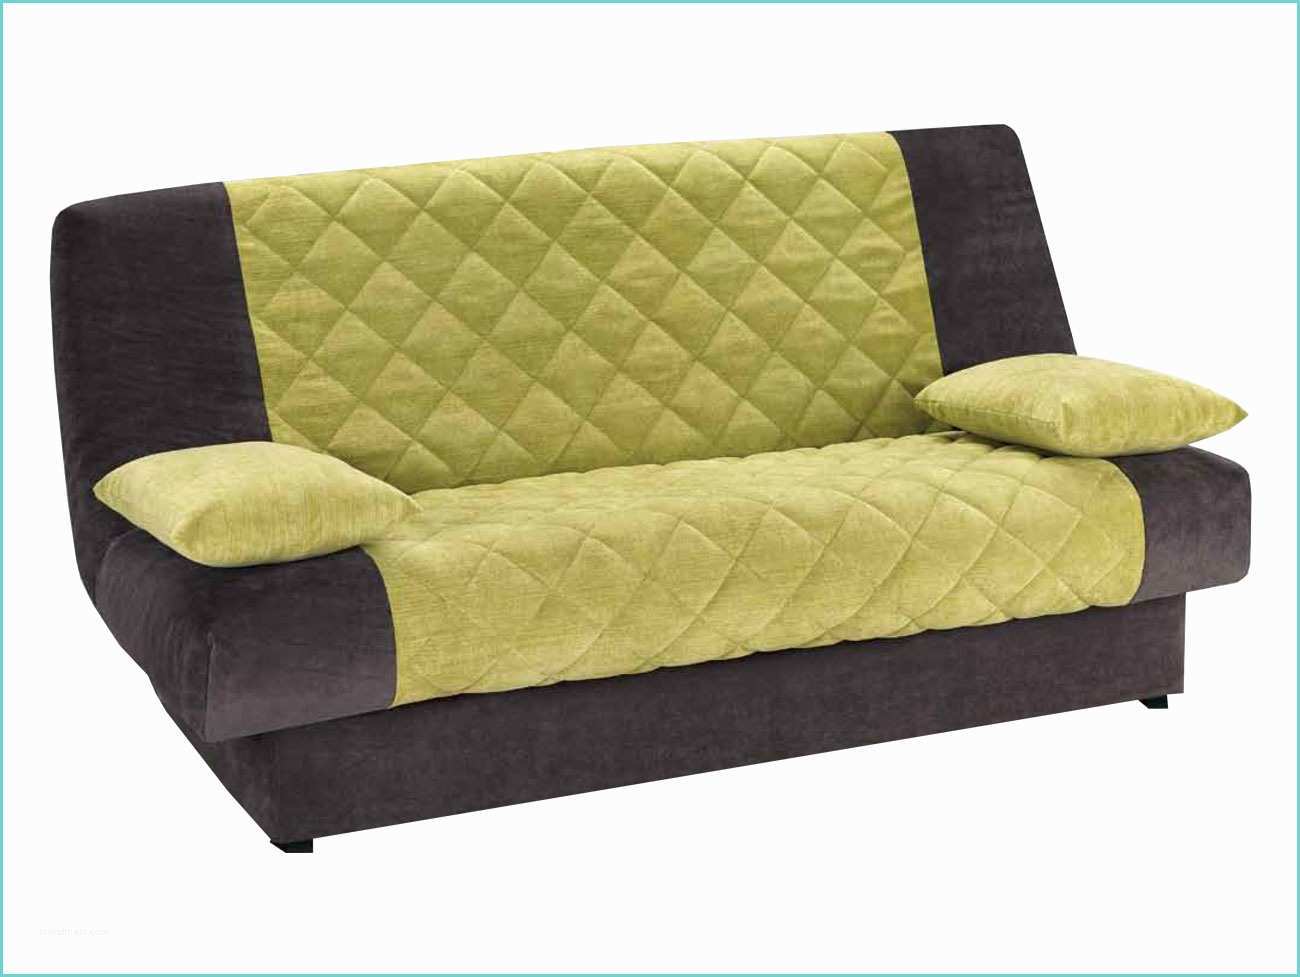 Clic Clac Carrefour Housse Canapé Clic Clac Ikea Royal sofa Idée De Canapé